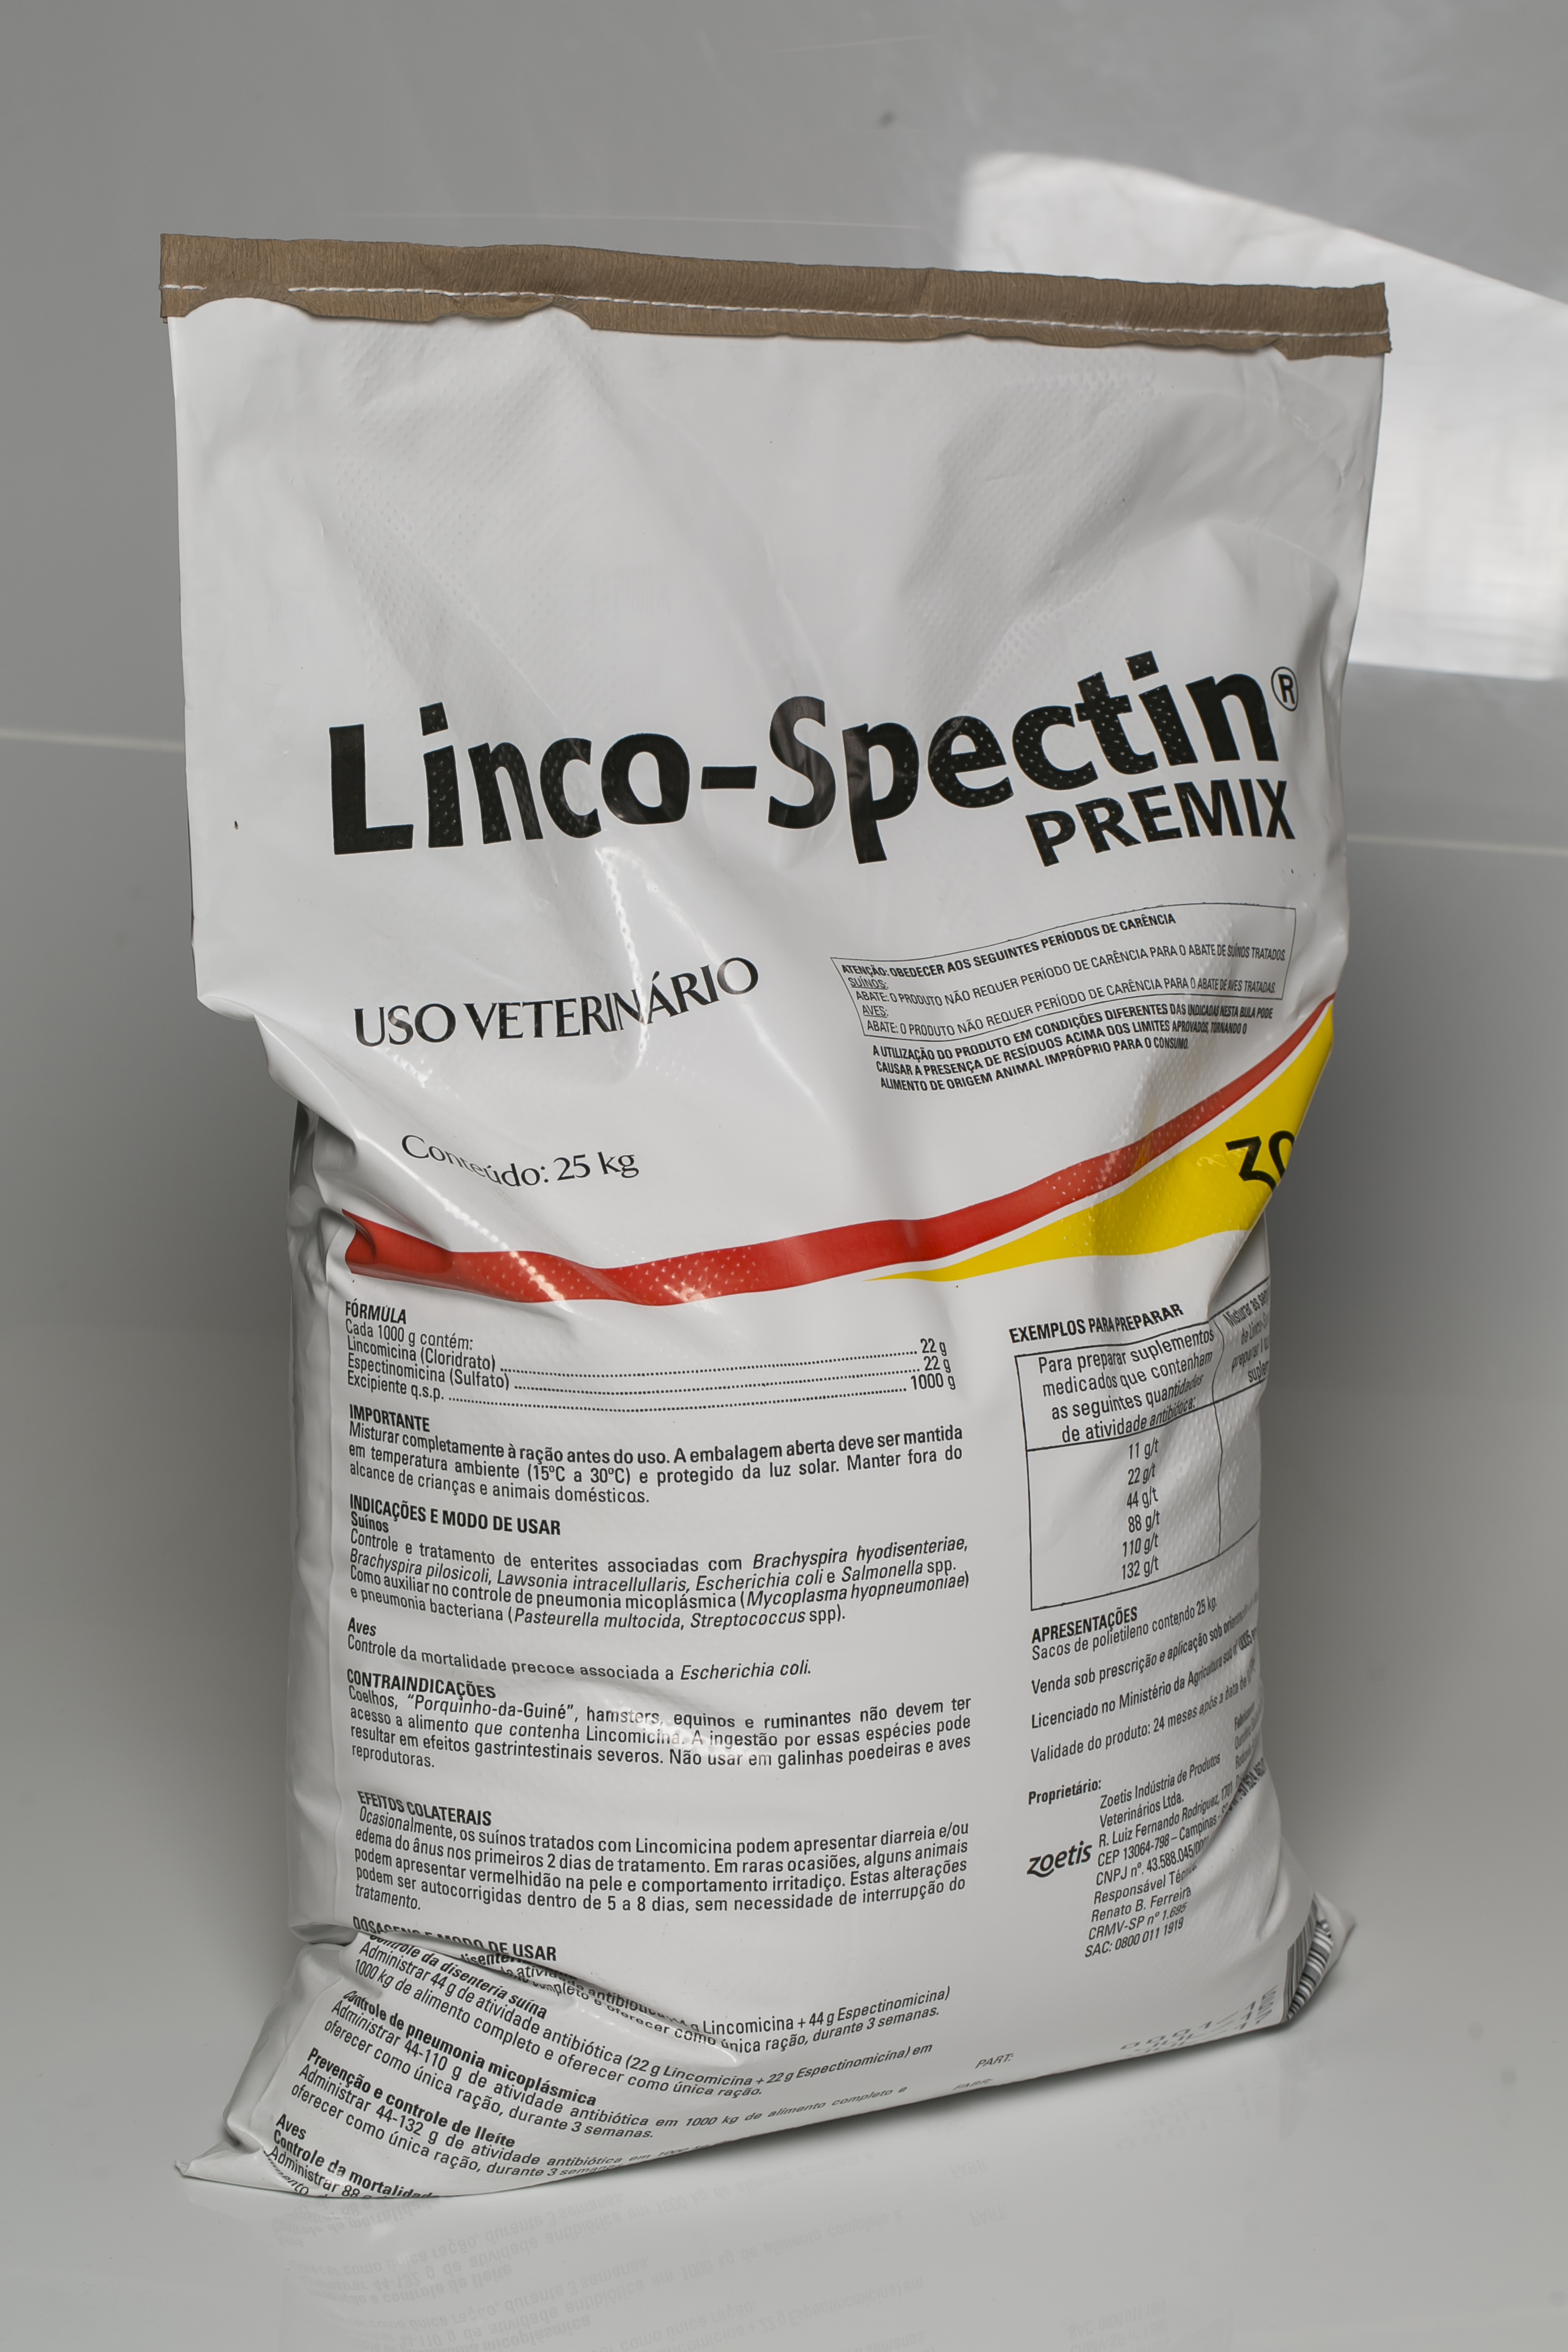 Linco-Spectin® Premix